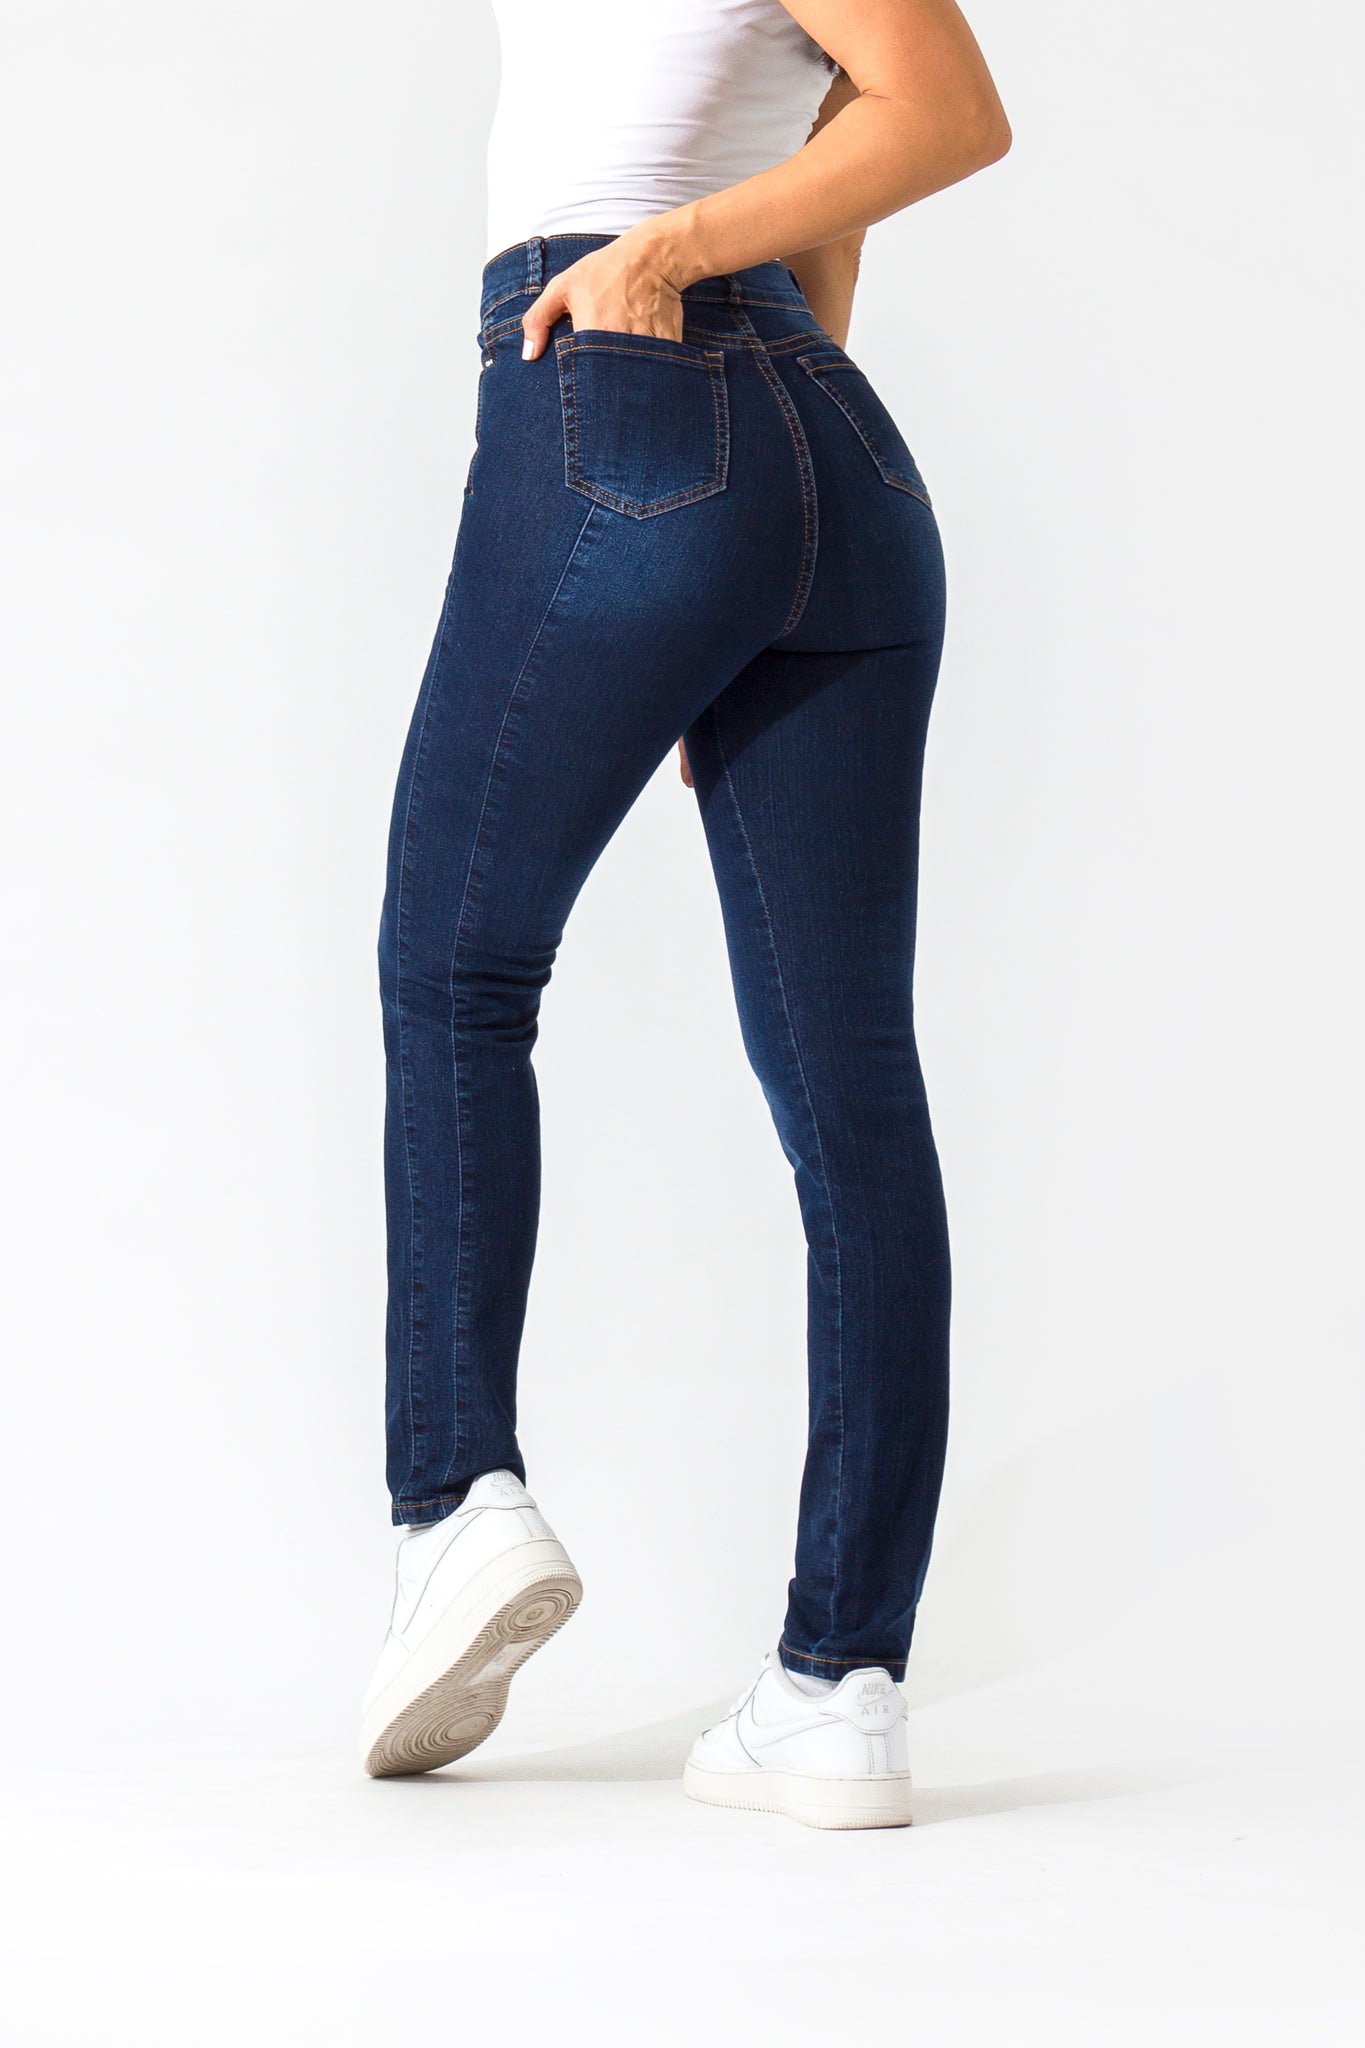 OHPOMP!® Basics, Cintura Alta Straight Jeans Azul Medio OP1006